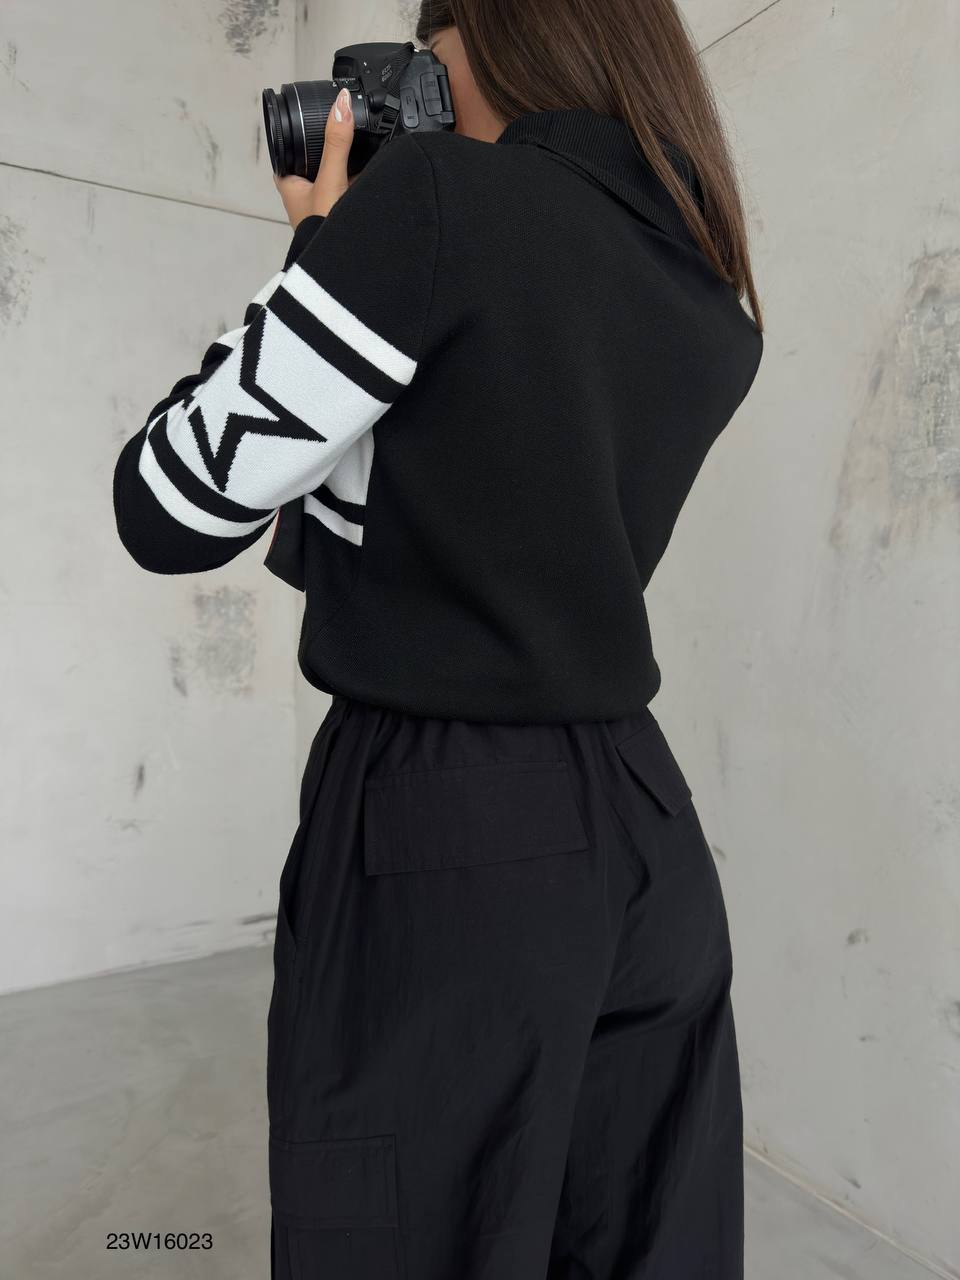 Дамски пуловер Shane Blakc  https://bvseductive.com/products/дамски-пуловер-shane-blakc  модерен дамски пуловер в черно и бяло изработка от фино плетиво с поло яка комбинативен модел, с който ще направите впечатление